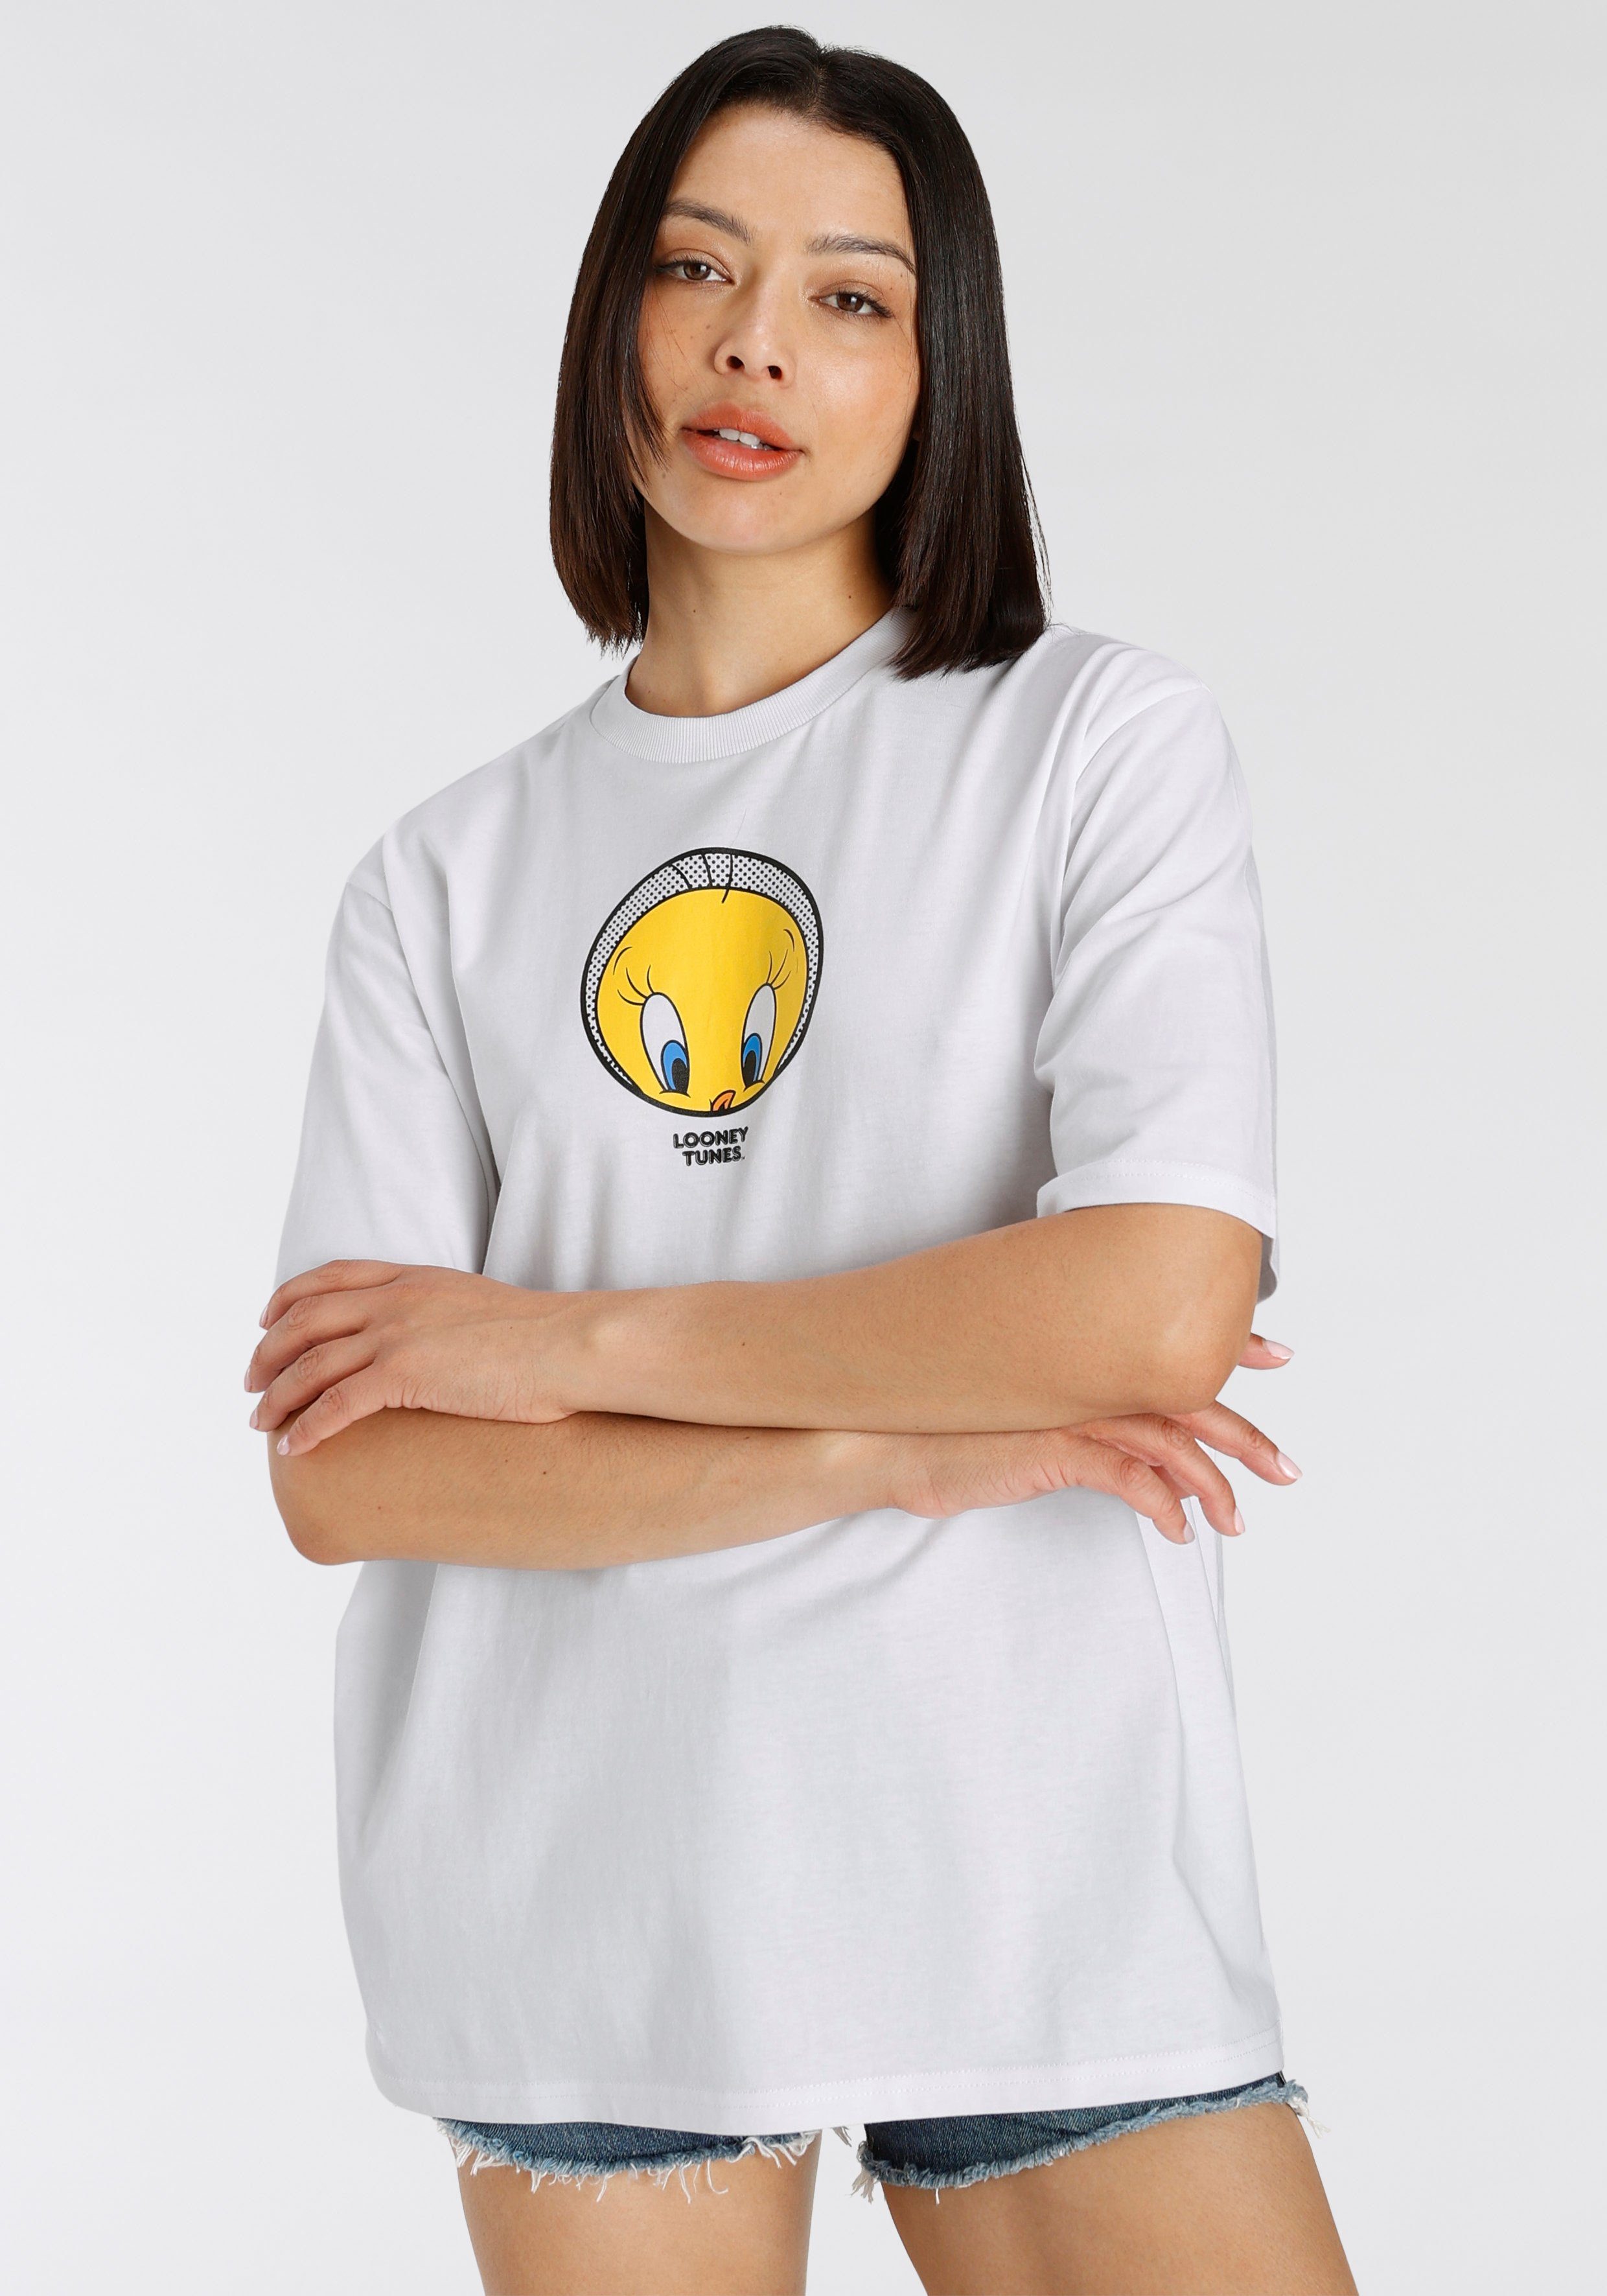 T-Shirt Tweety T-Shirt New white York Capelli